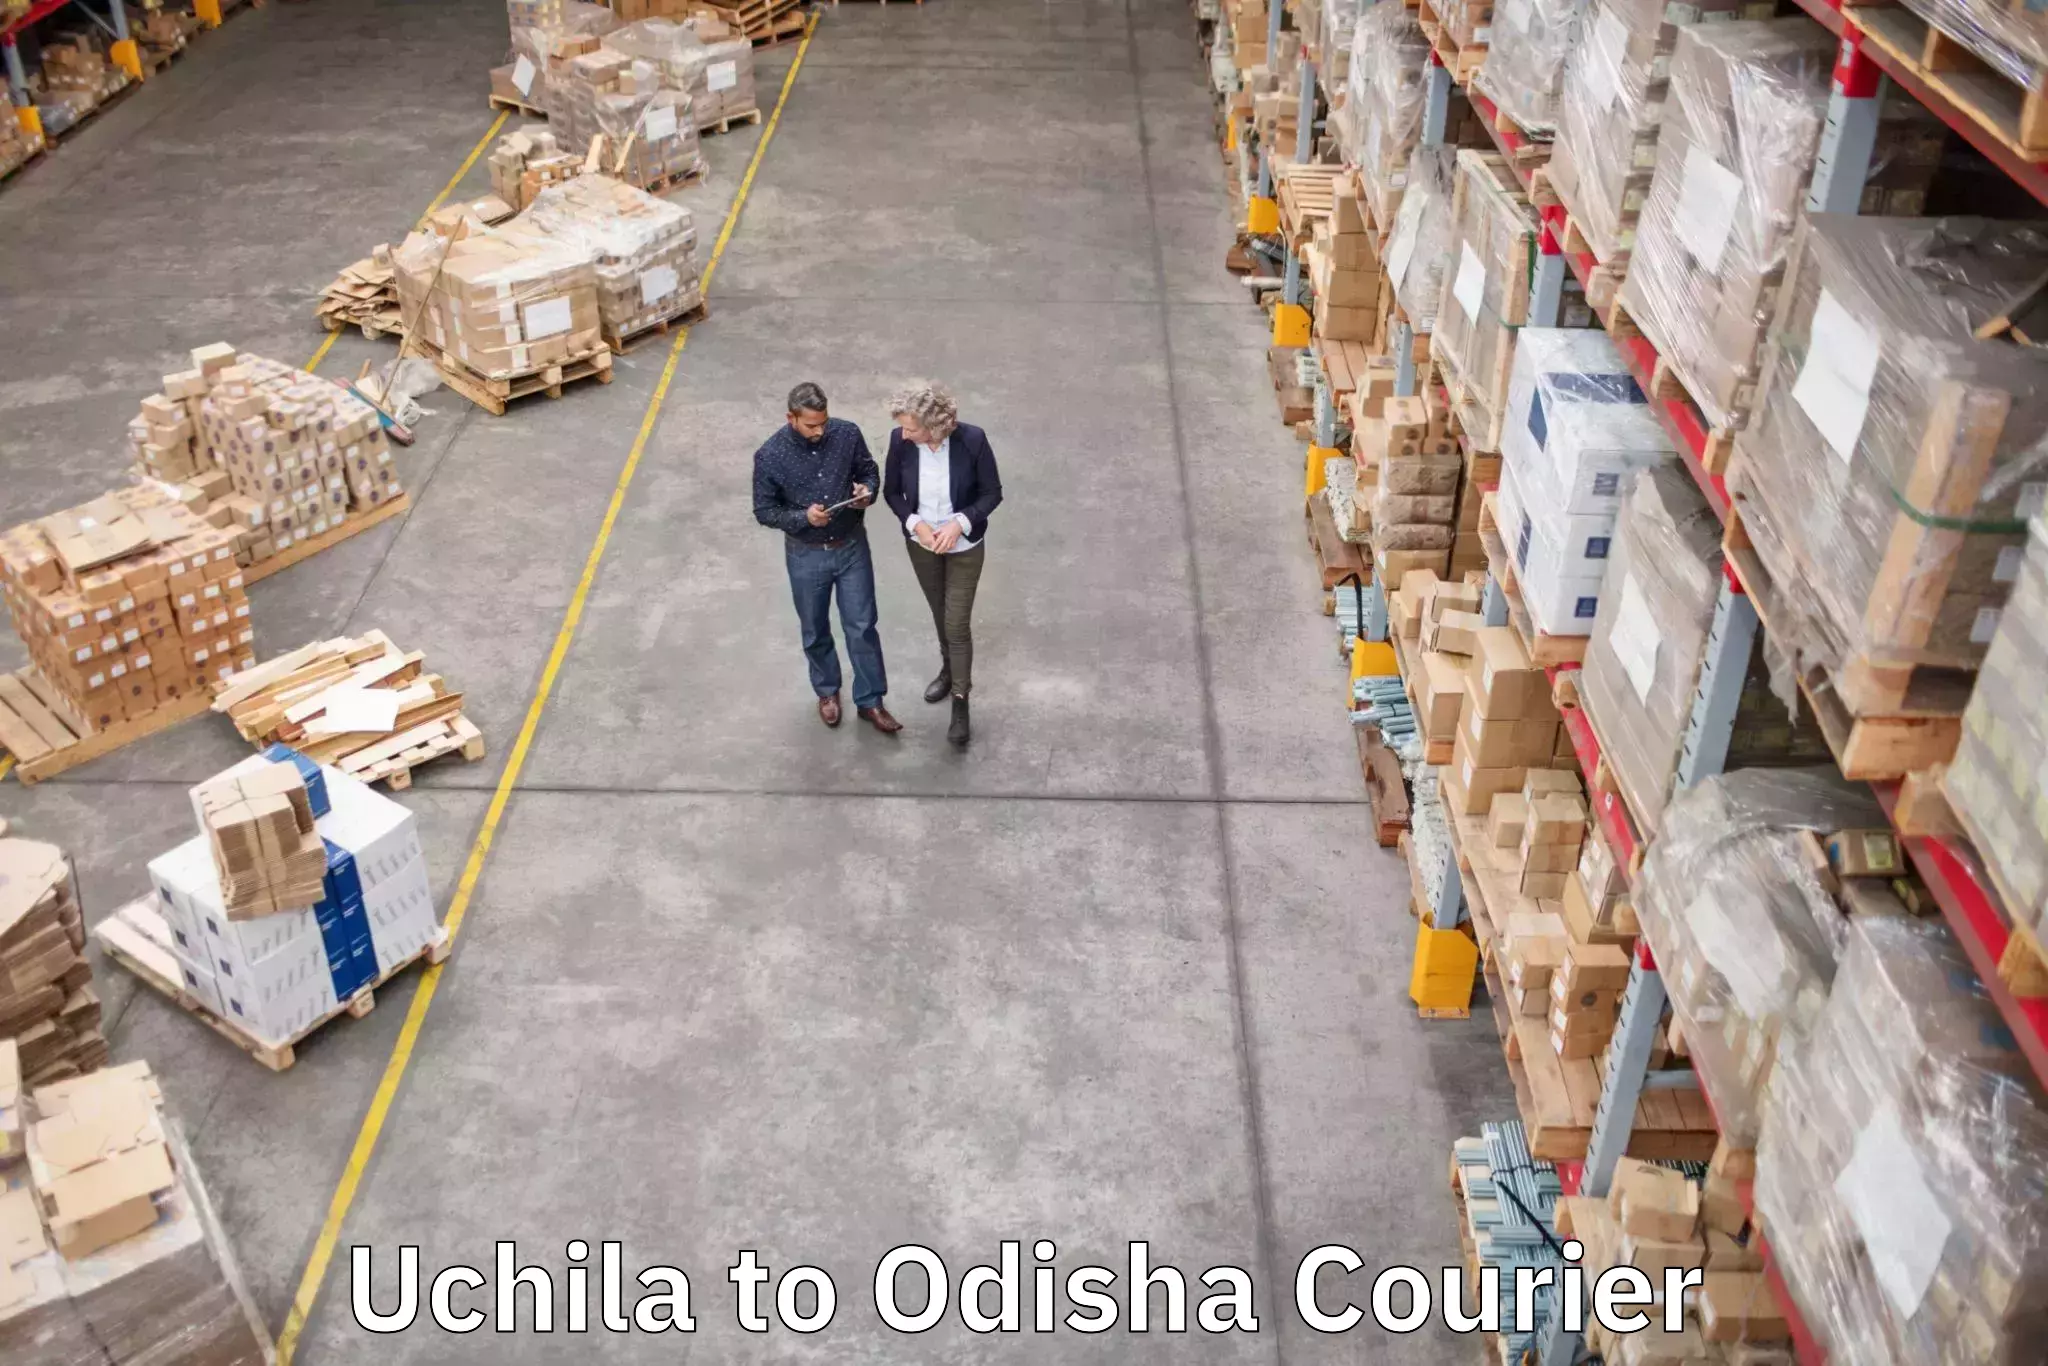 Luggage transport consultancy Uchila to Odisha